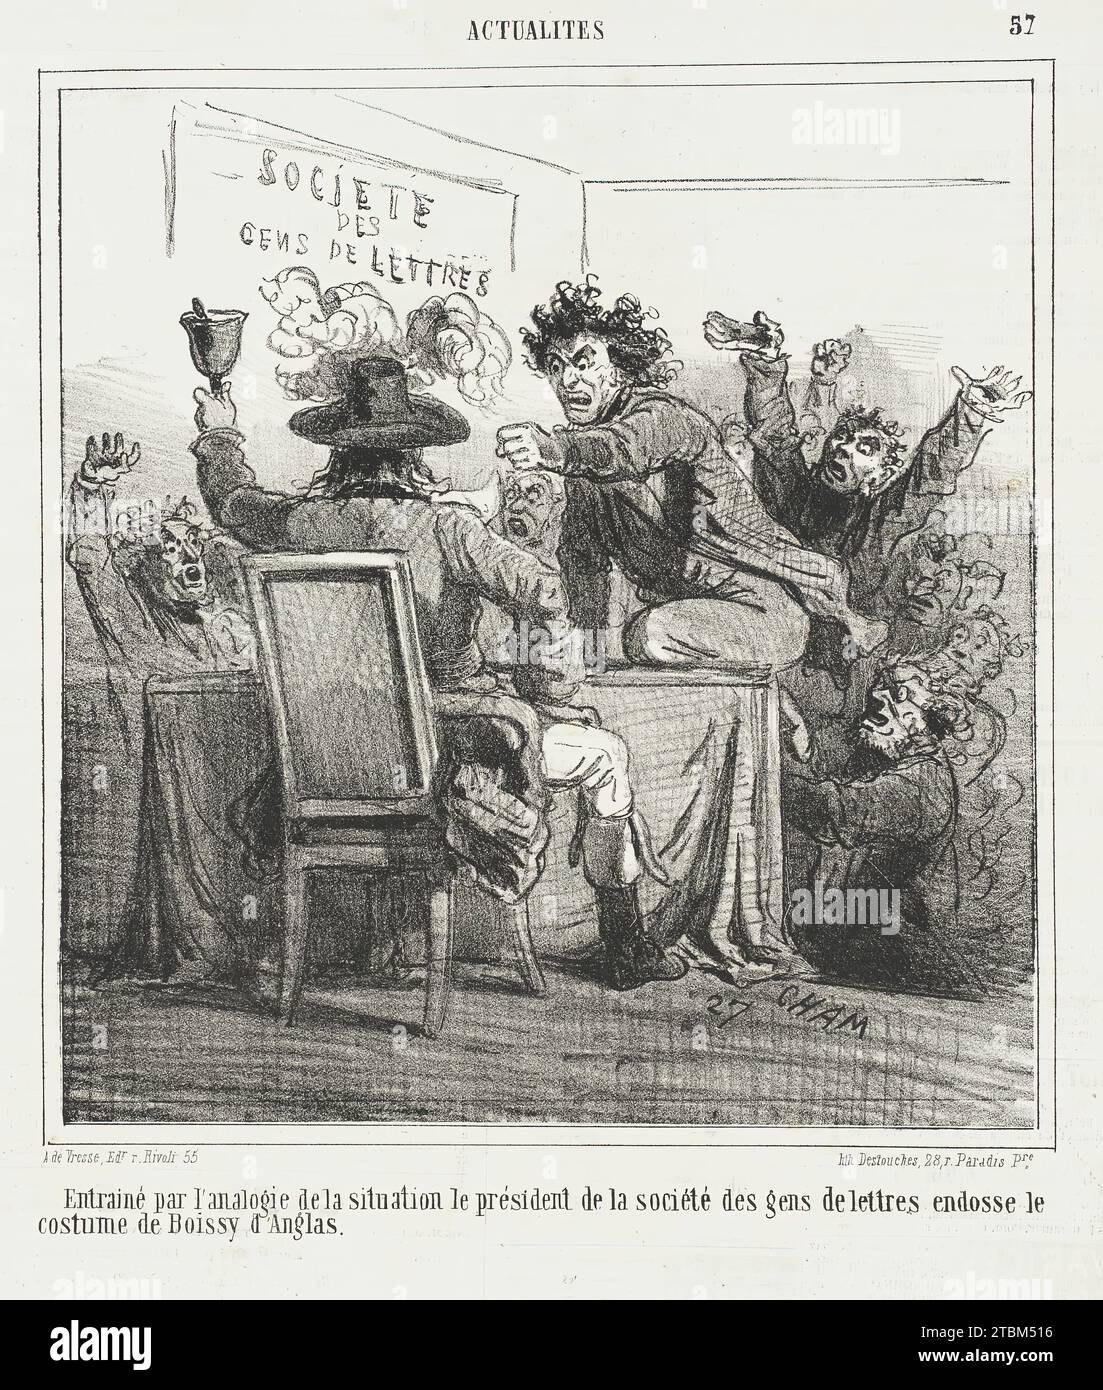 Entrain&#xe9; par l'analogie de la situation le pr&#xe9;sident de la soci&#xe9;t&#xe9; des gens de lettres endosse le costume de Boissy d'Anglas, 1866. From Actualit&#xe9;s. Stock Photo